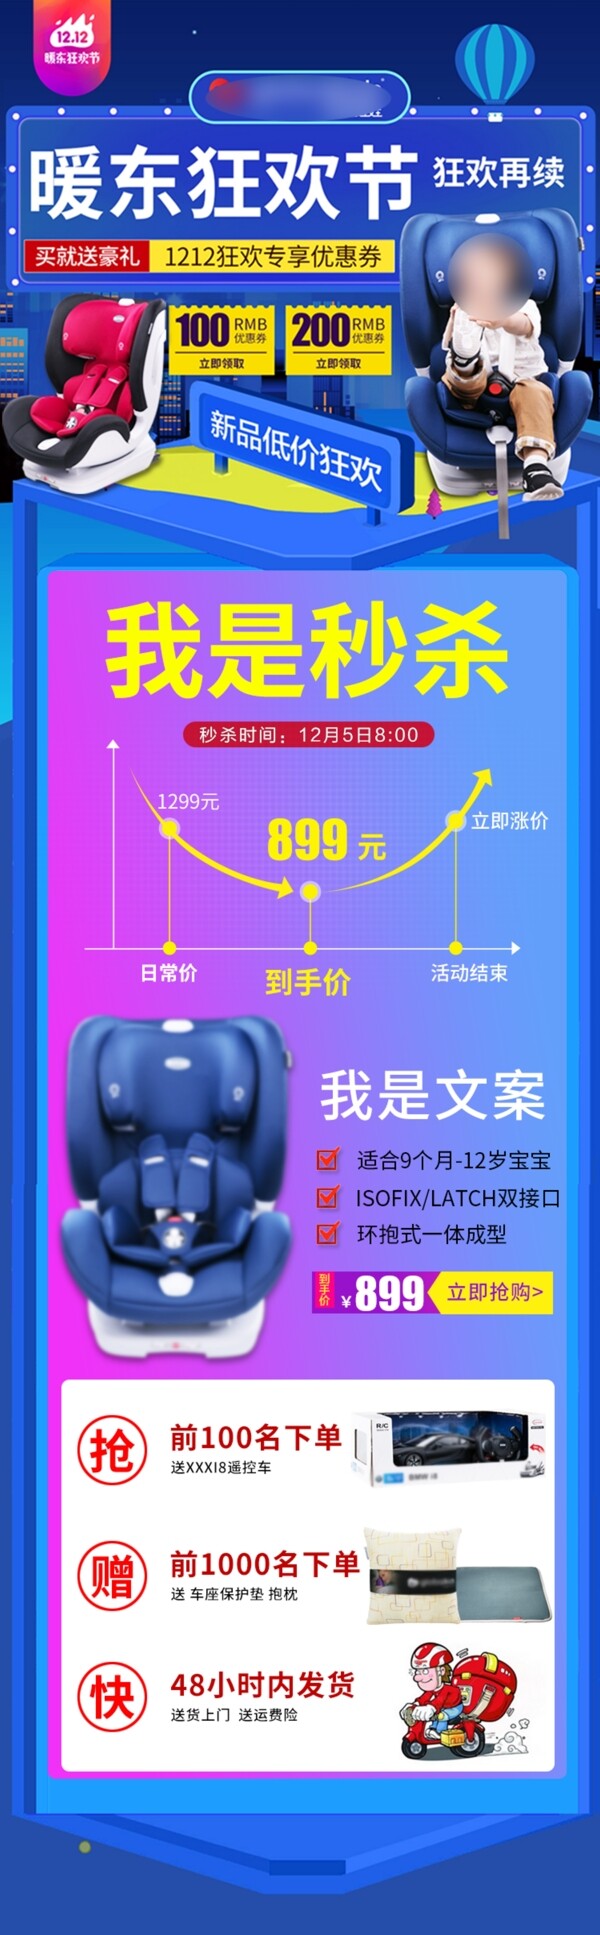 淘宝京东天猫秒杀曲线图促销海报psd素材